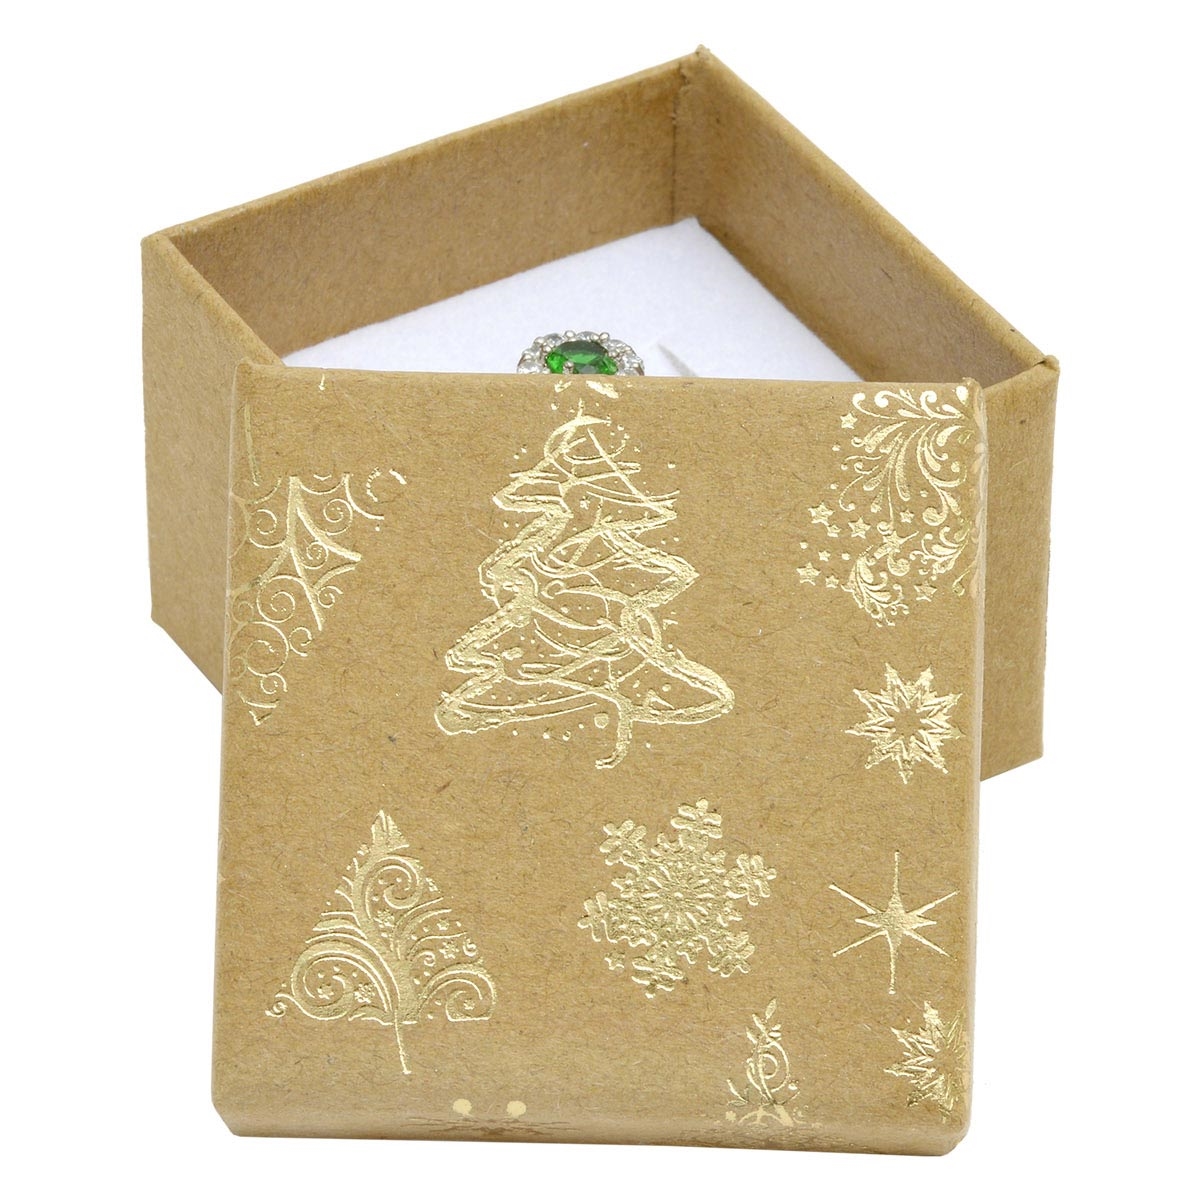 Vianočná darčeková krabička na prsteň / náušnice - zlatý motív